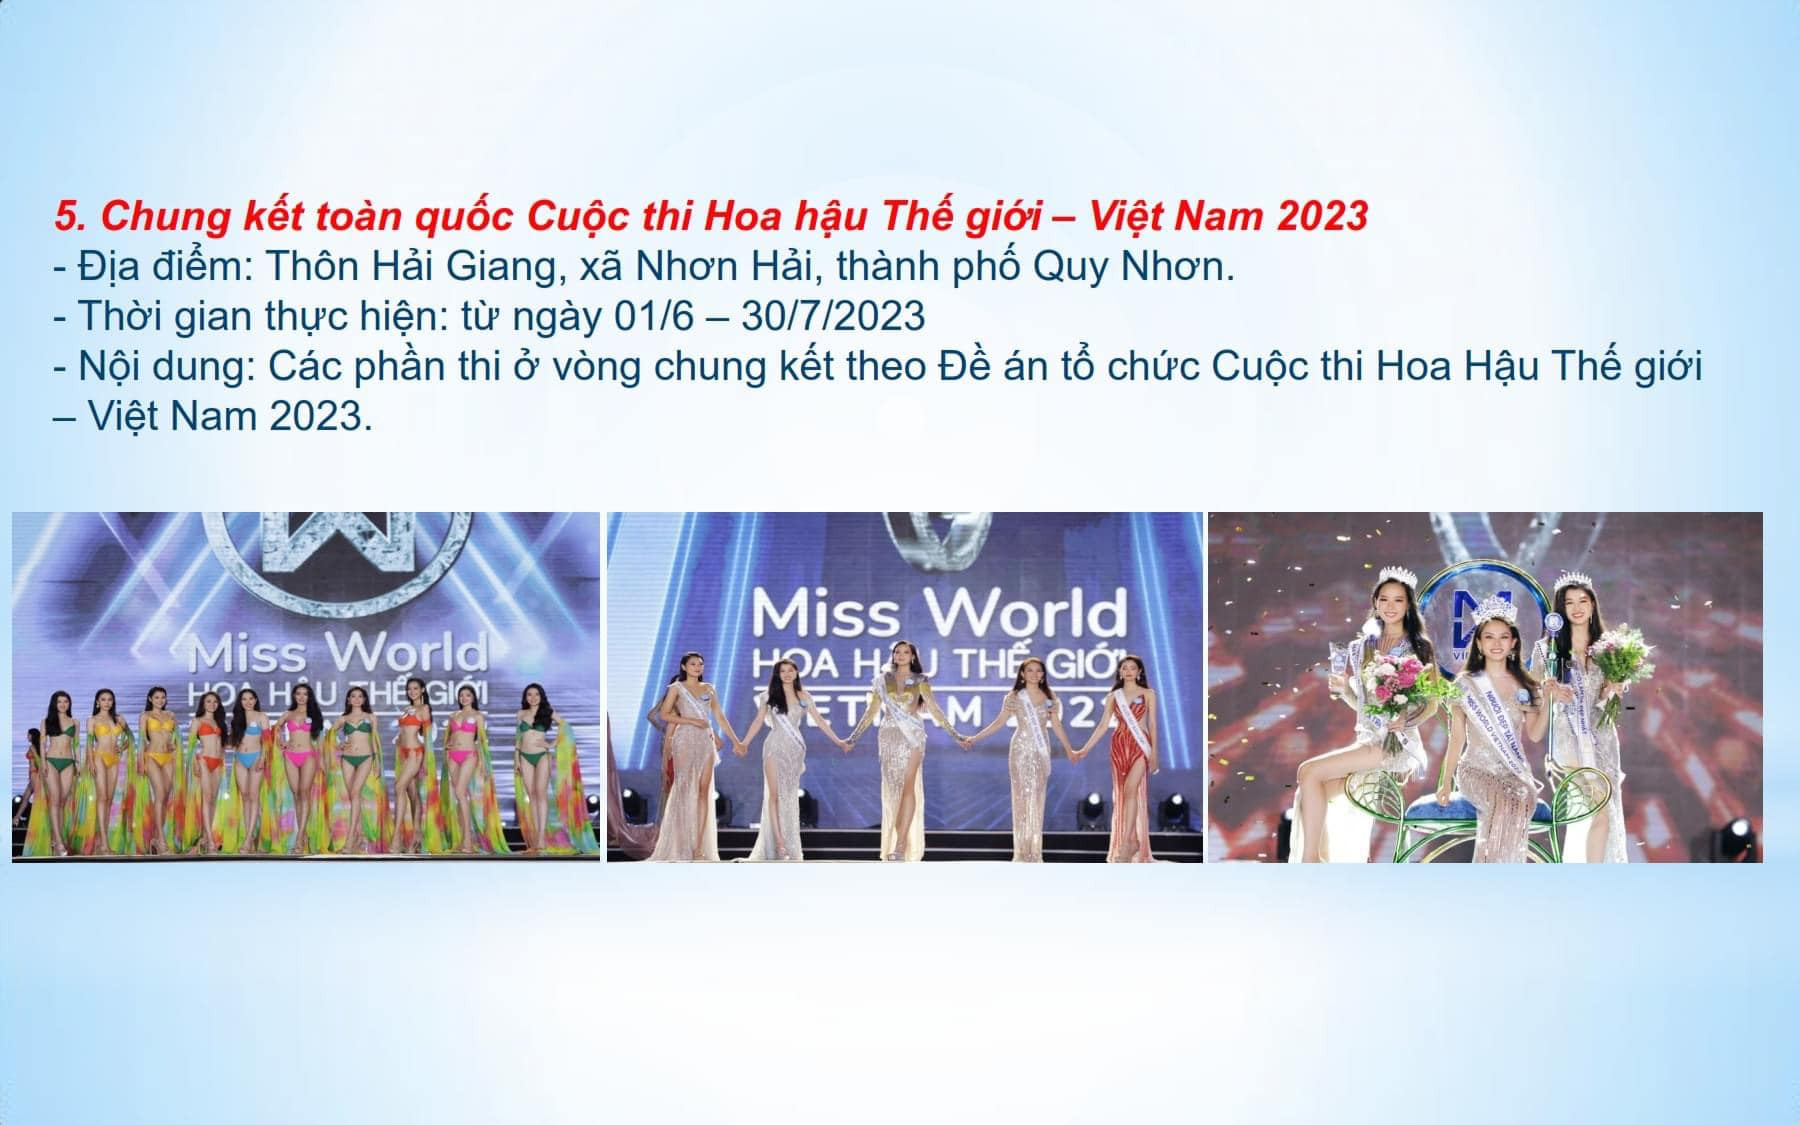 Các sự kiện lễ hội du lịch tại Quy Nhơn Bình Định 2023